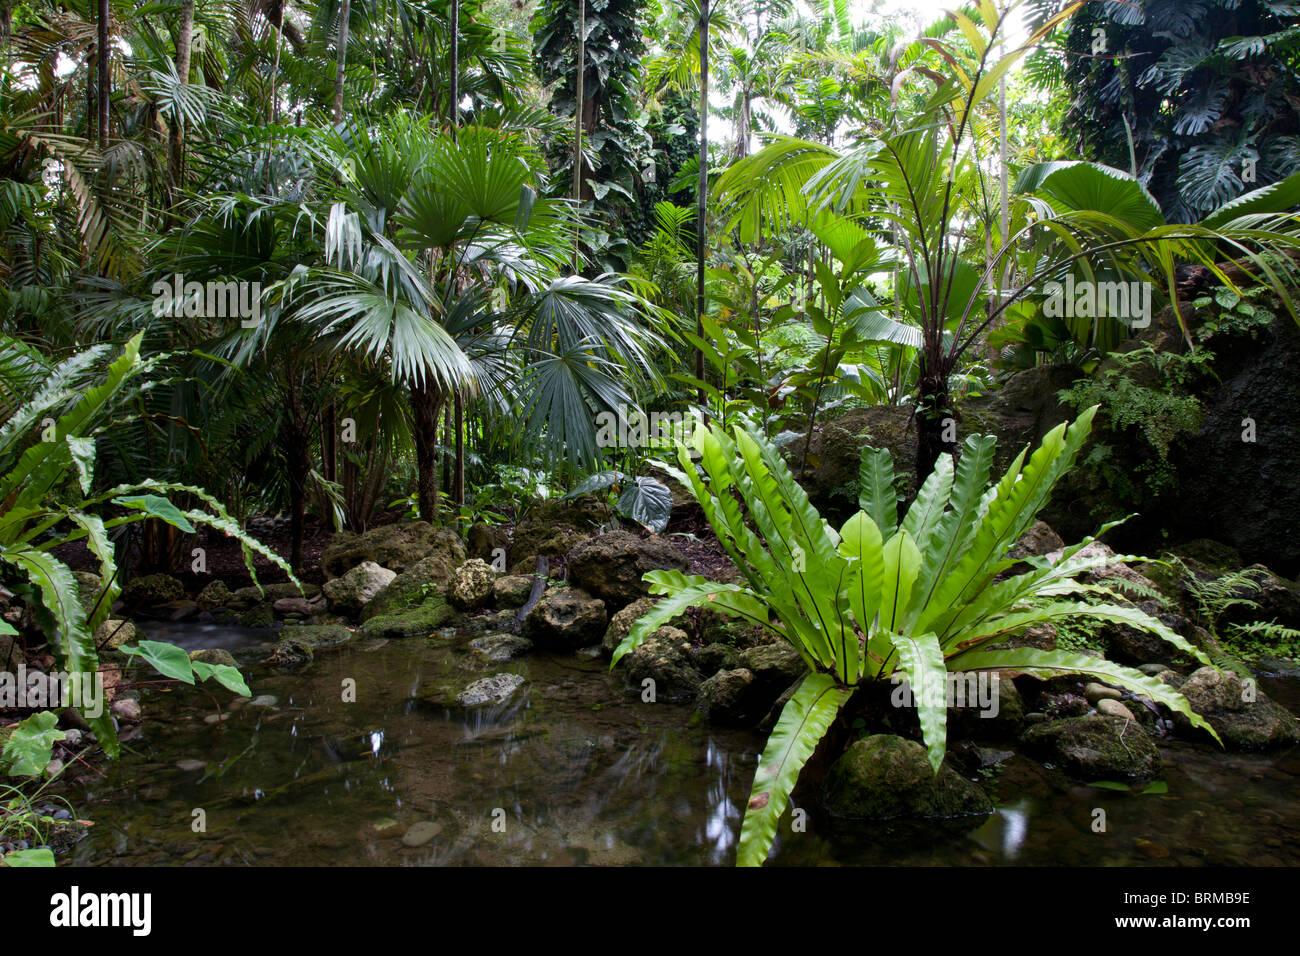 Costa Rica. Rain forest. Stock Photo